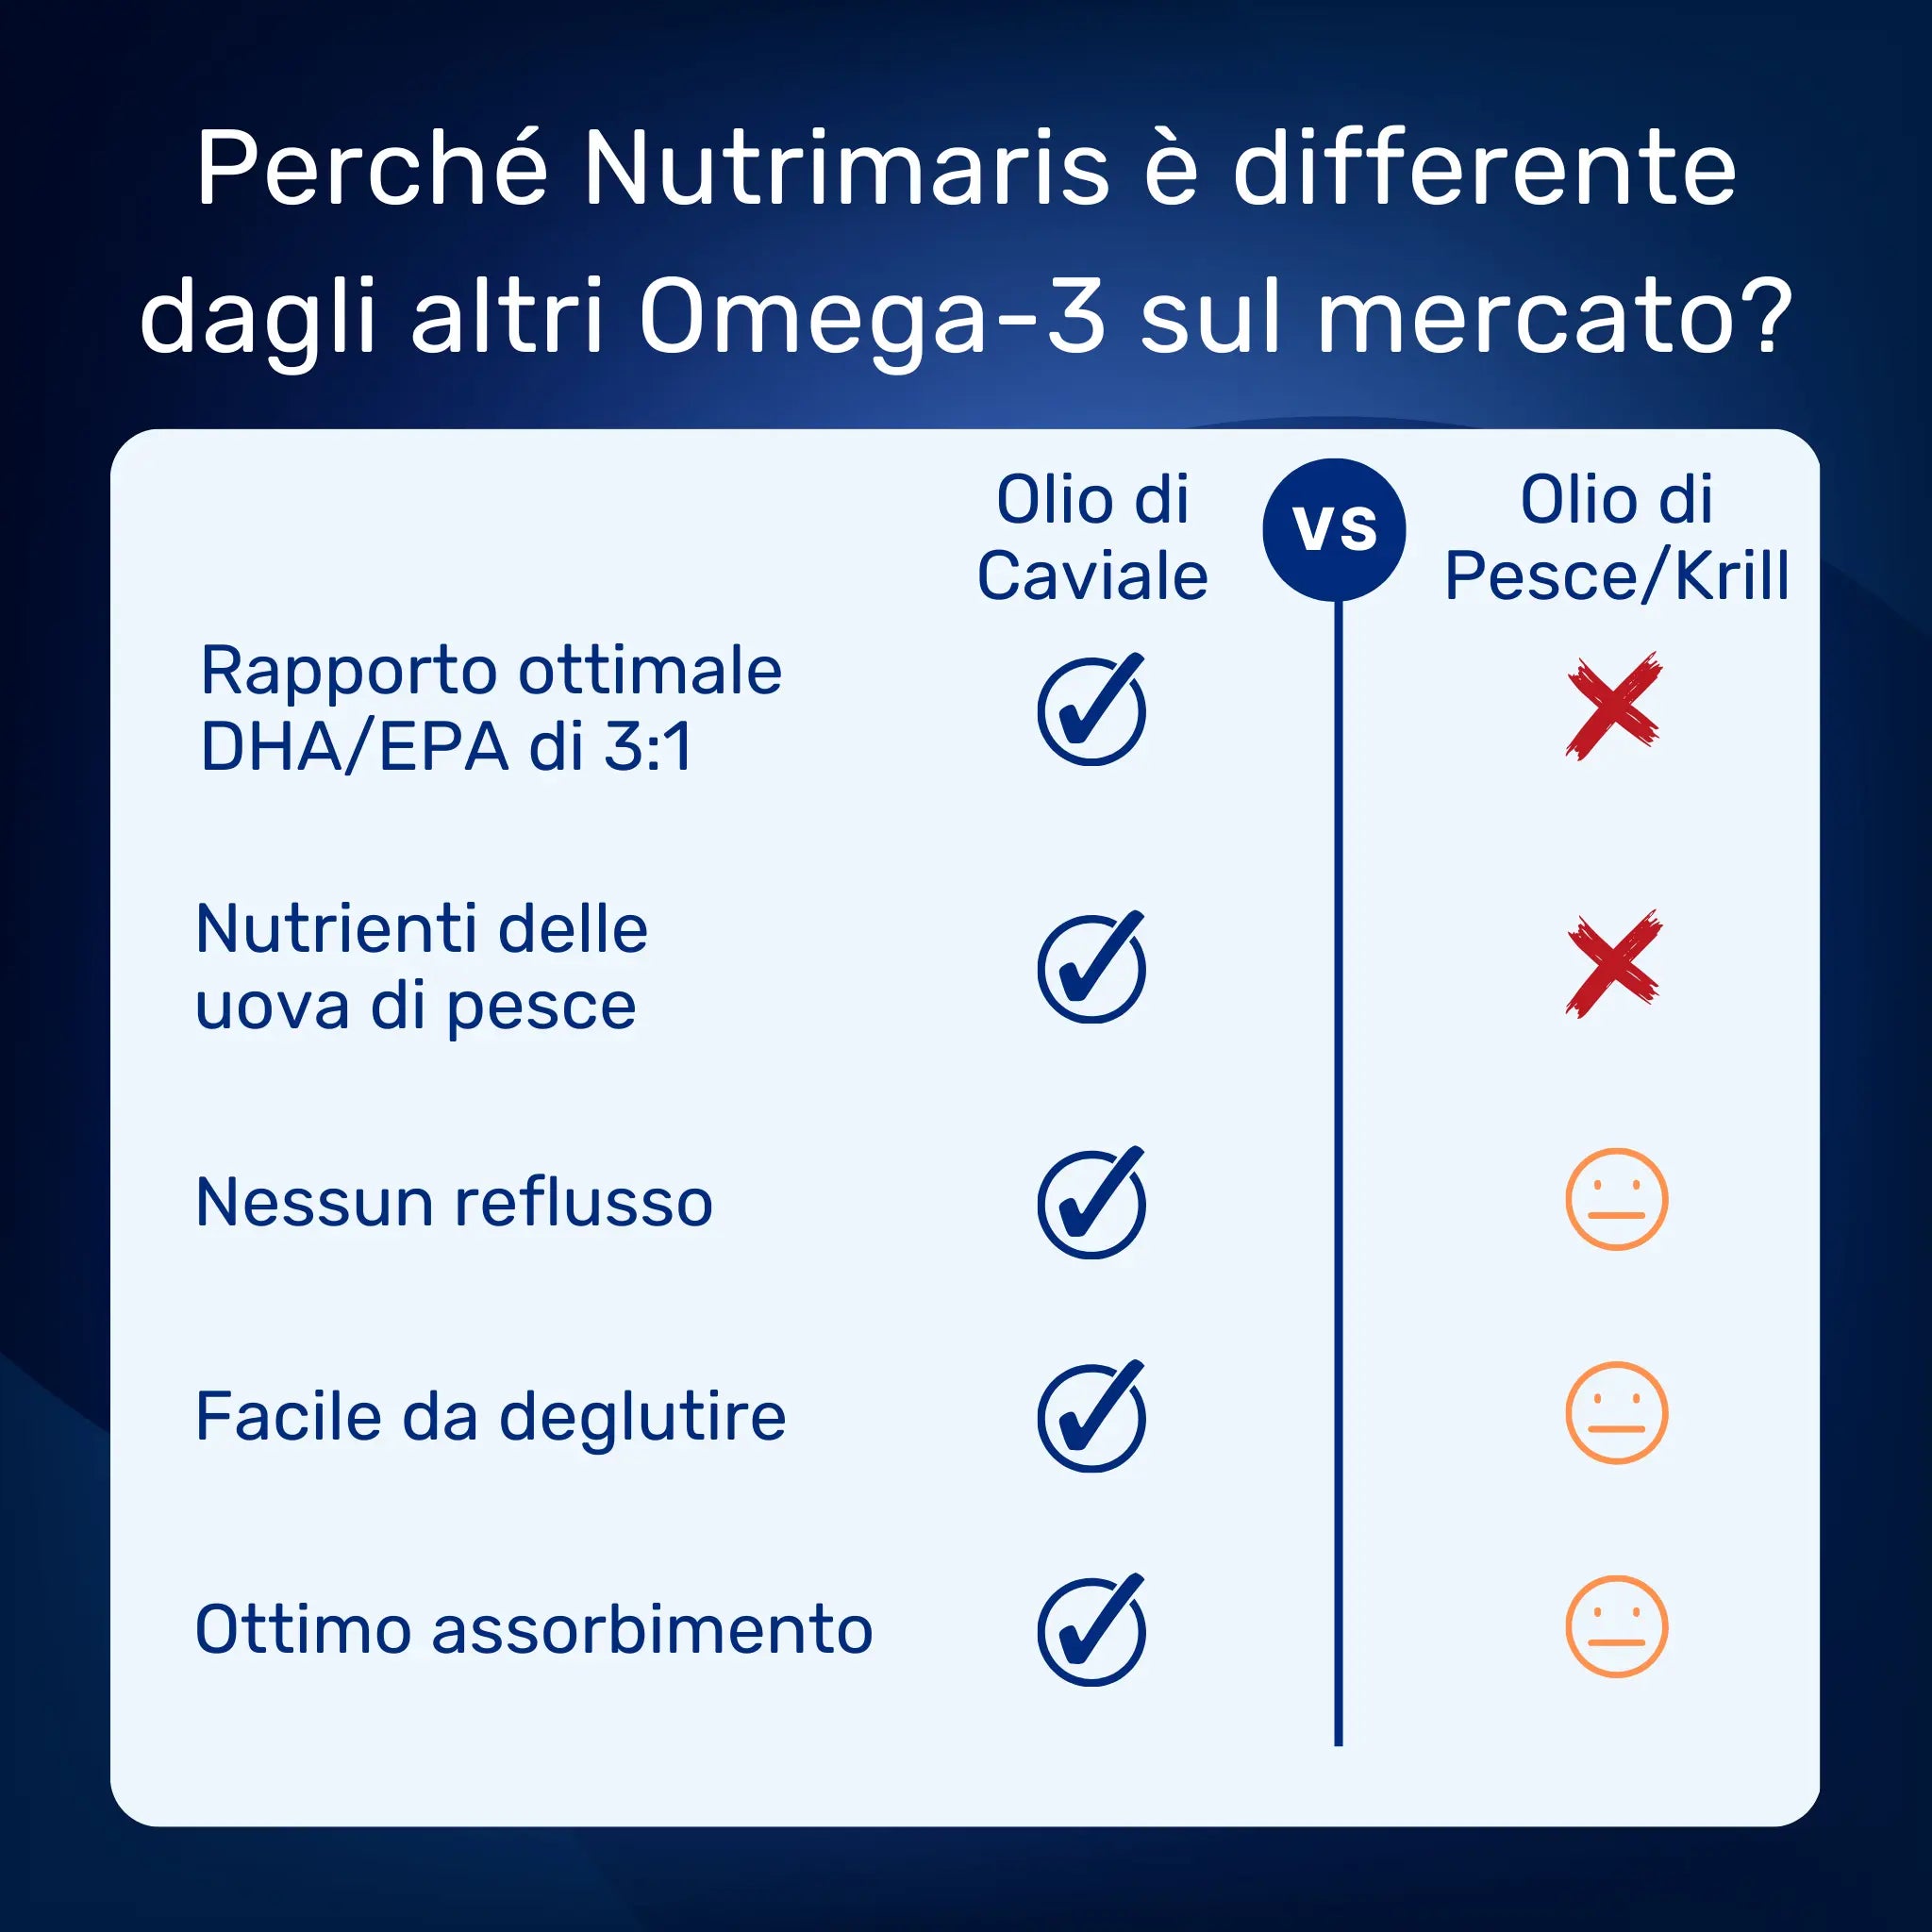 Peché Nutrimaris è differente dagli altri Omega-3 sul mercato?